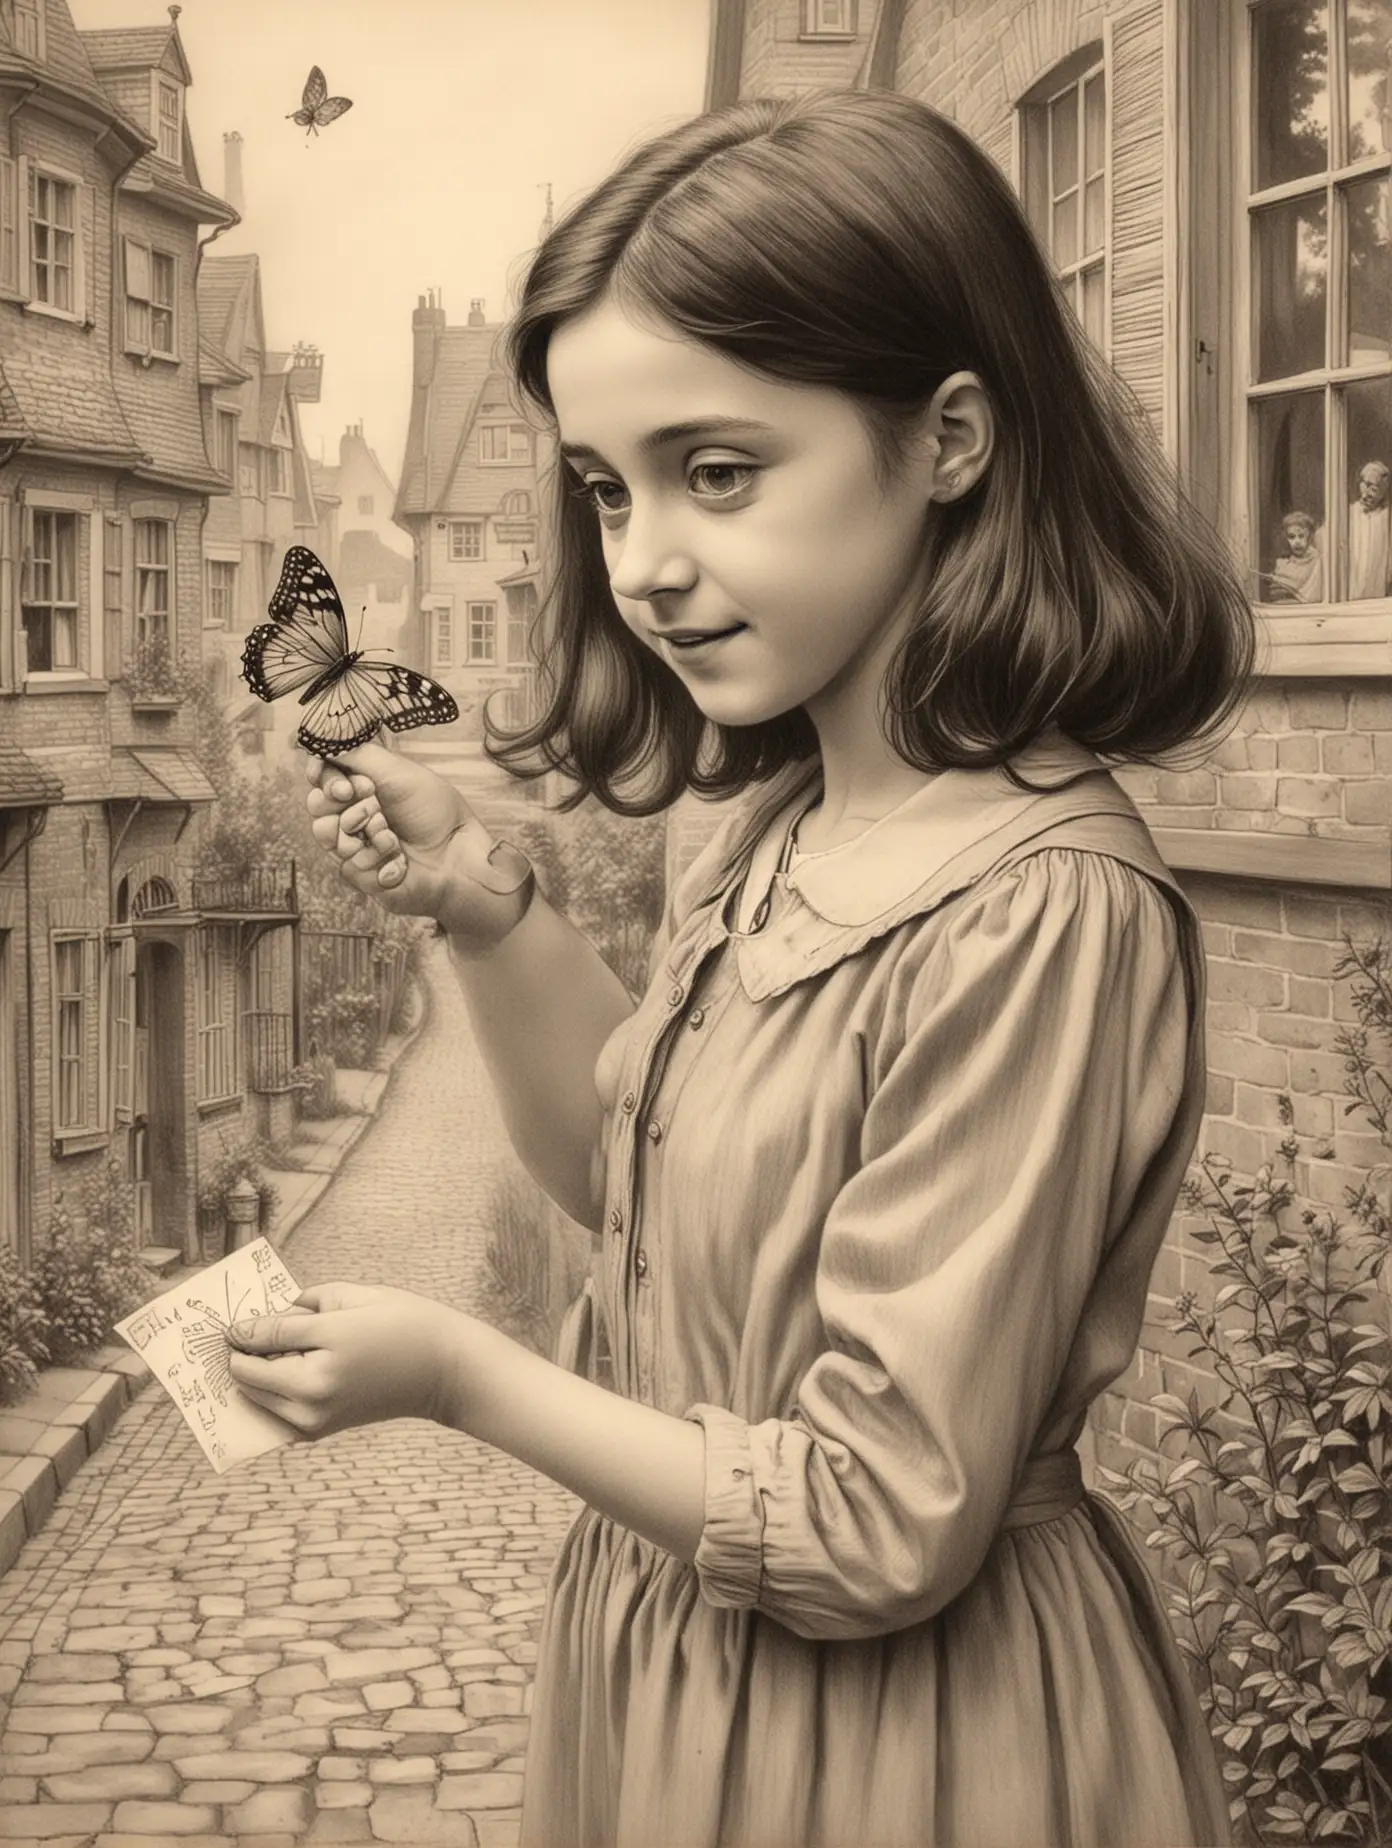 dibujo infantil de Ana Frank interactuando con una hermosa mariposa, con el fondo de su casa. Me encantaría que el dibujo transmitiera la inocencia y la curiosidad de Ana mientras disfruta de la naturaleza en su entorno familiar